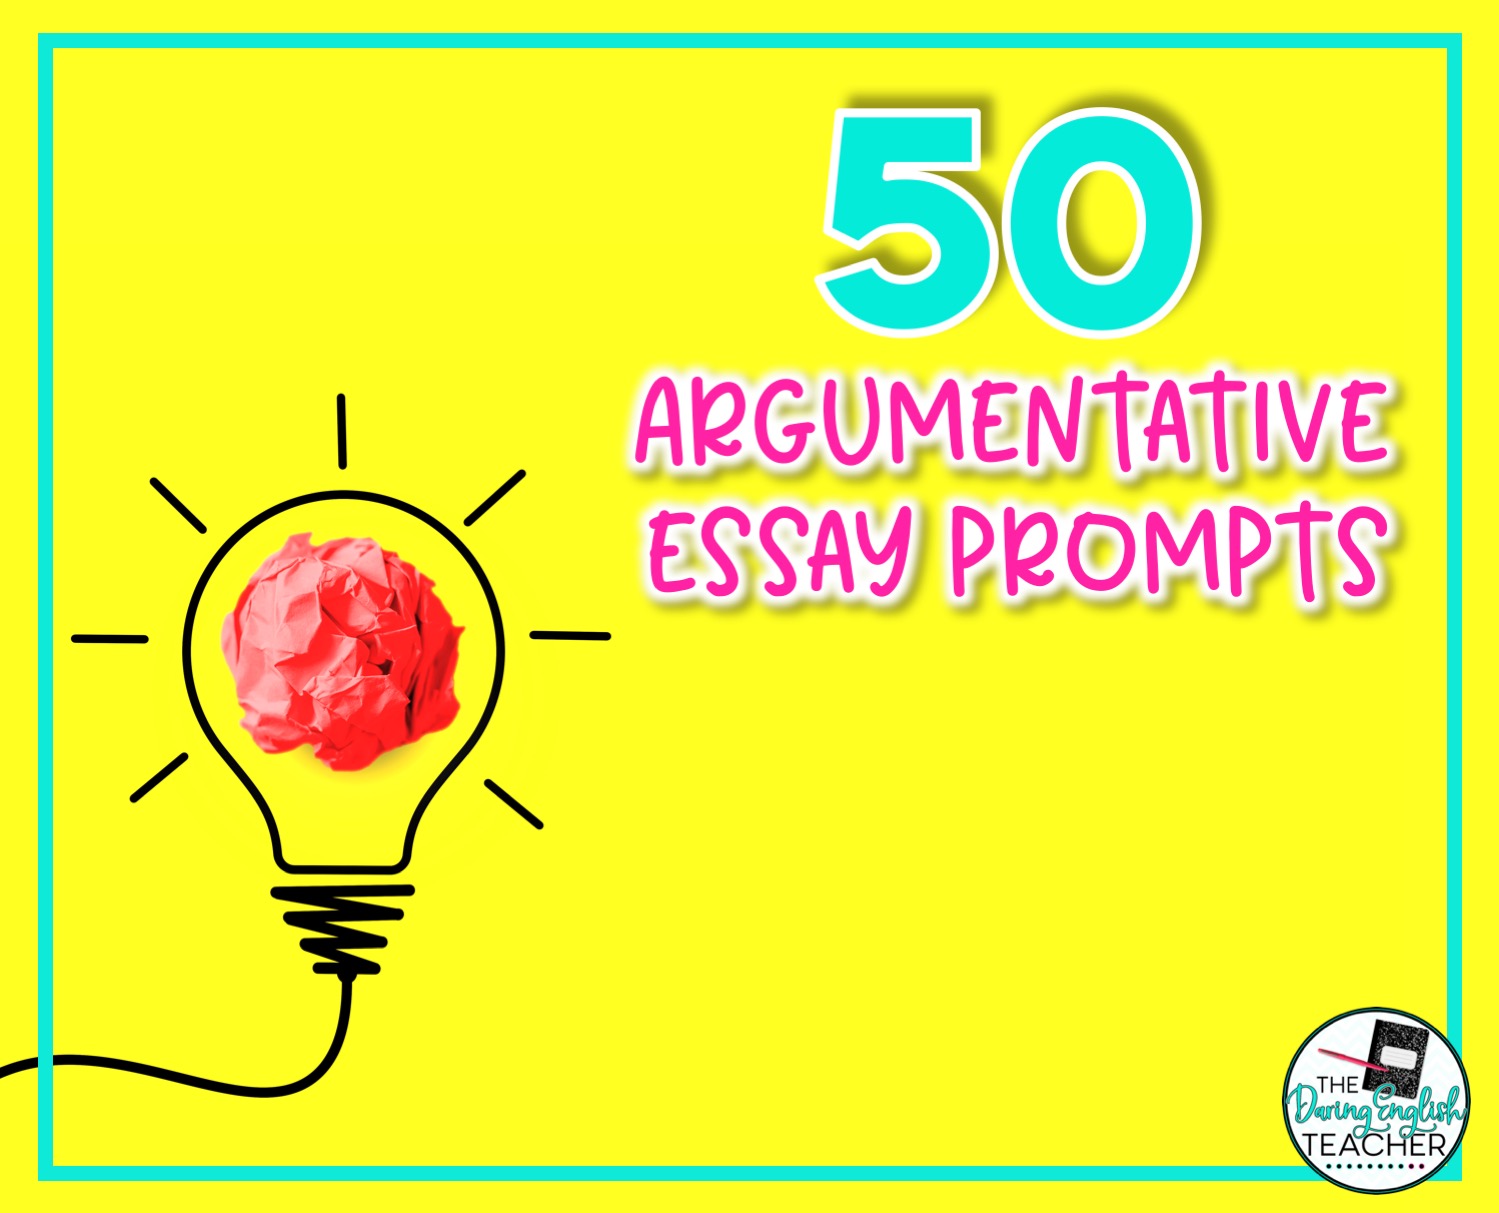 50 Argumentative Essay Prompts For